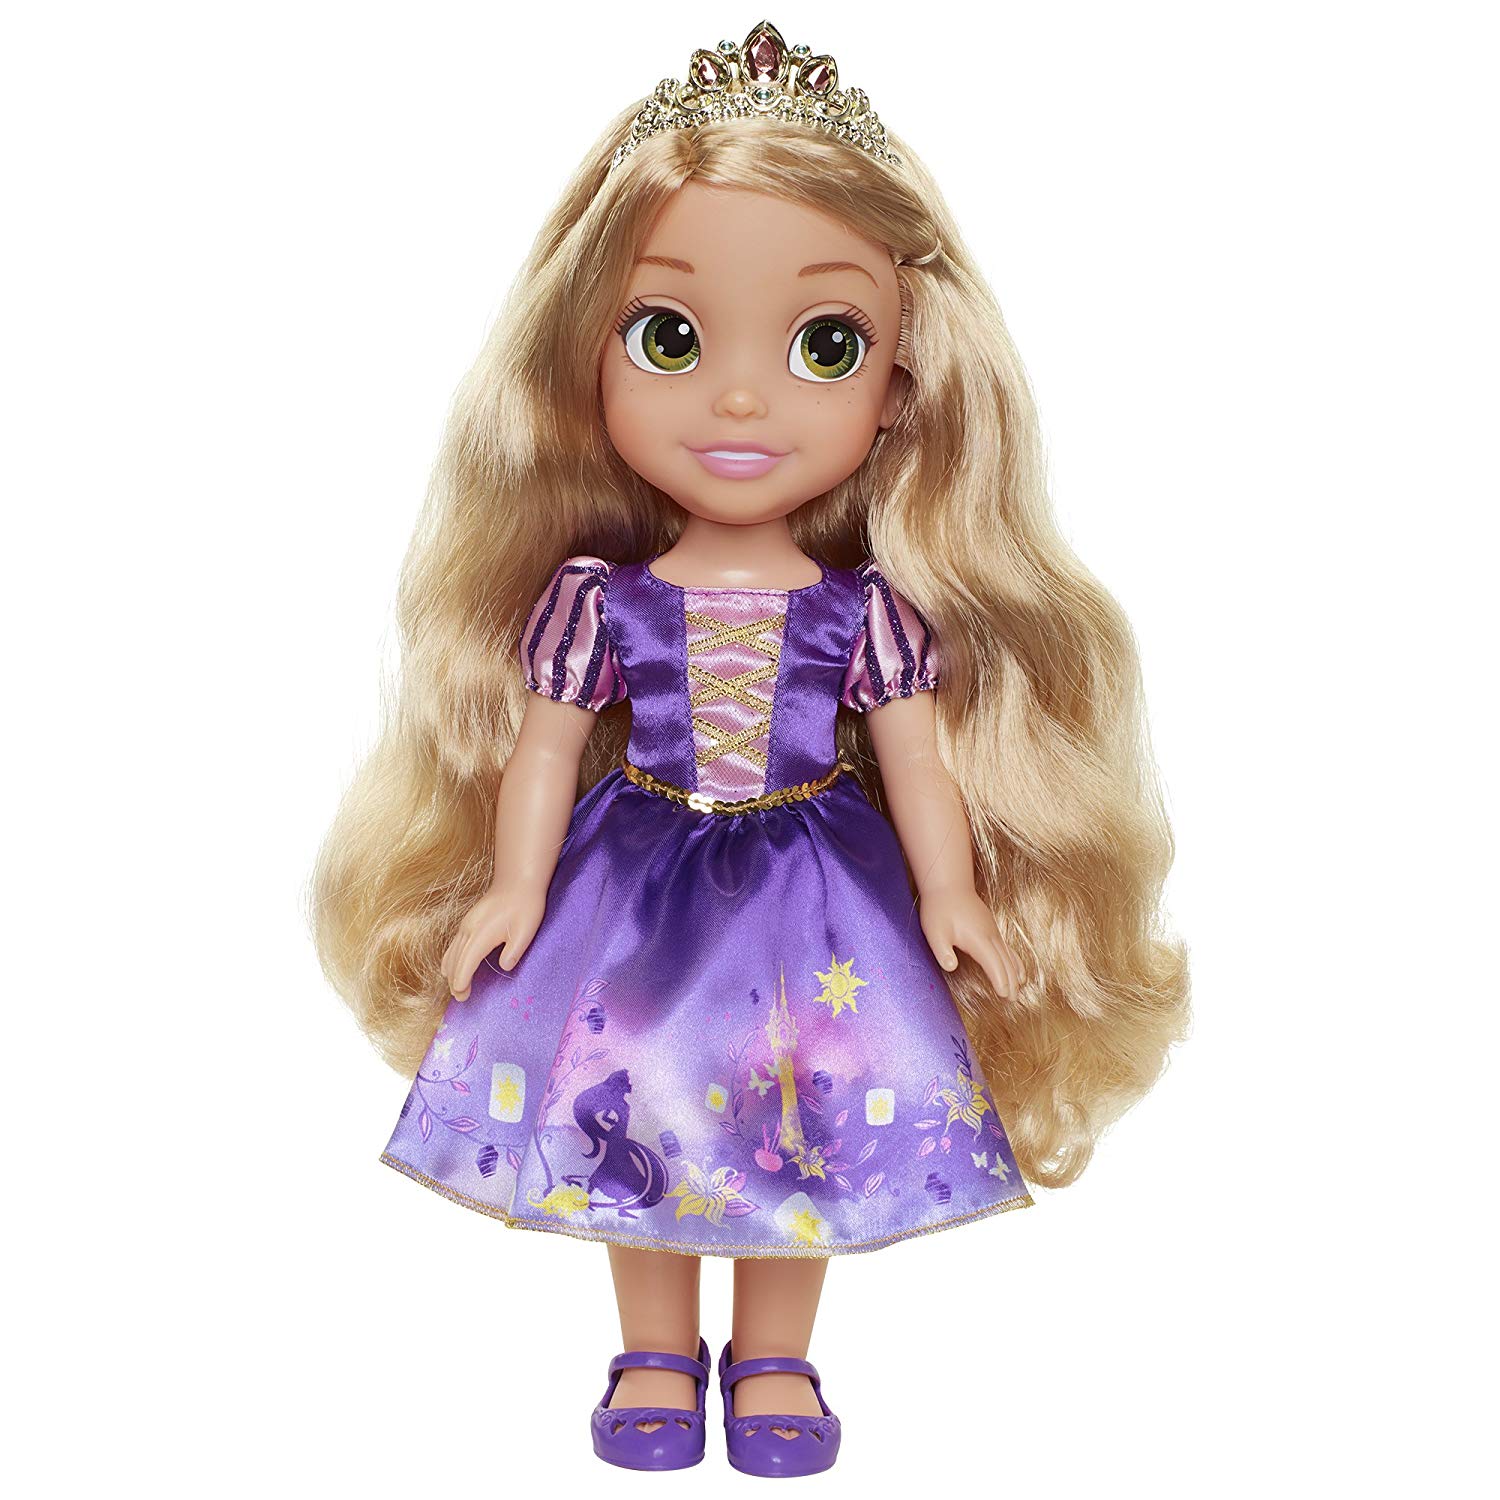 Disney Princess - Explore Your World - Core Large Doll - Rapunzel (78849)